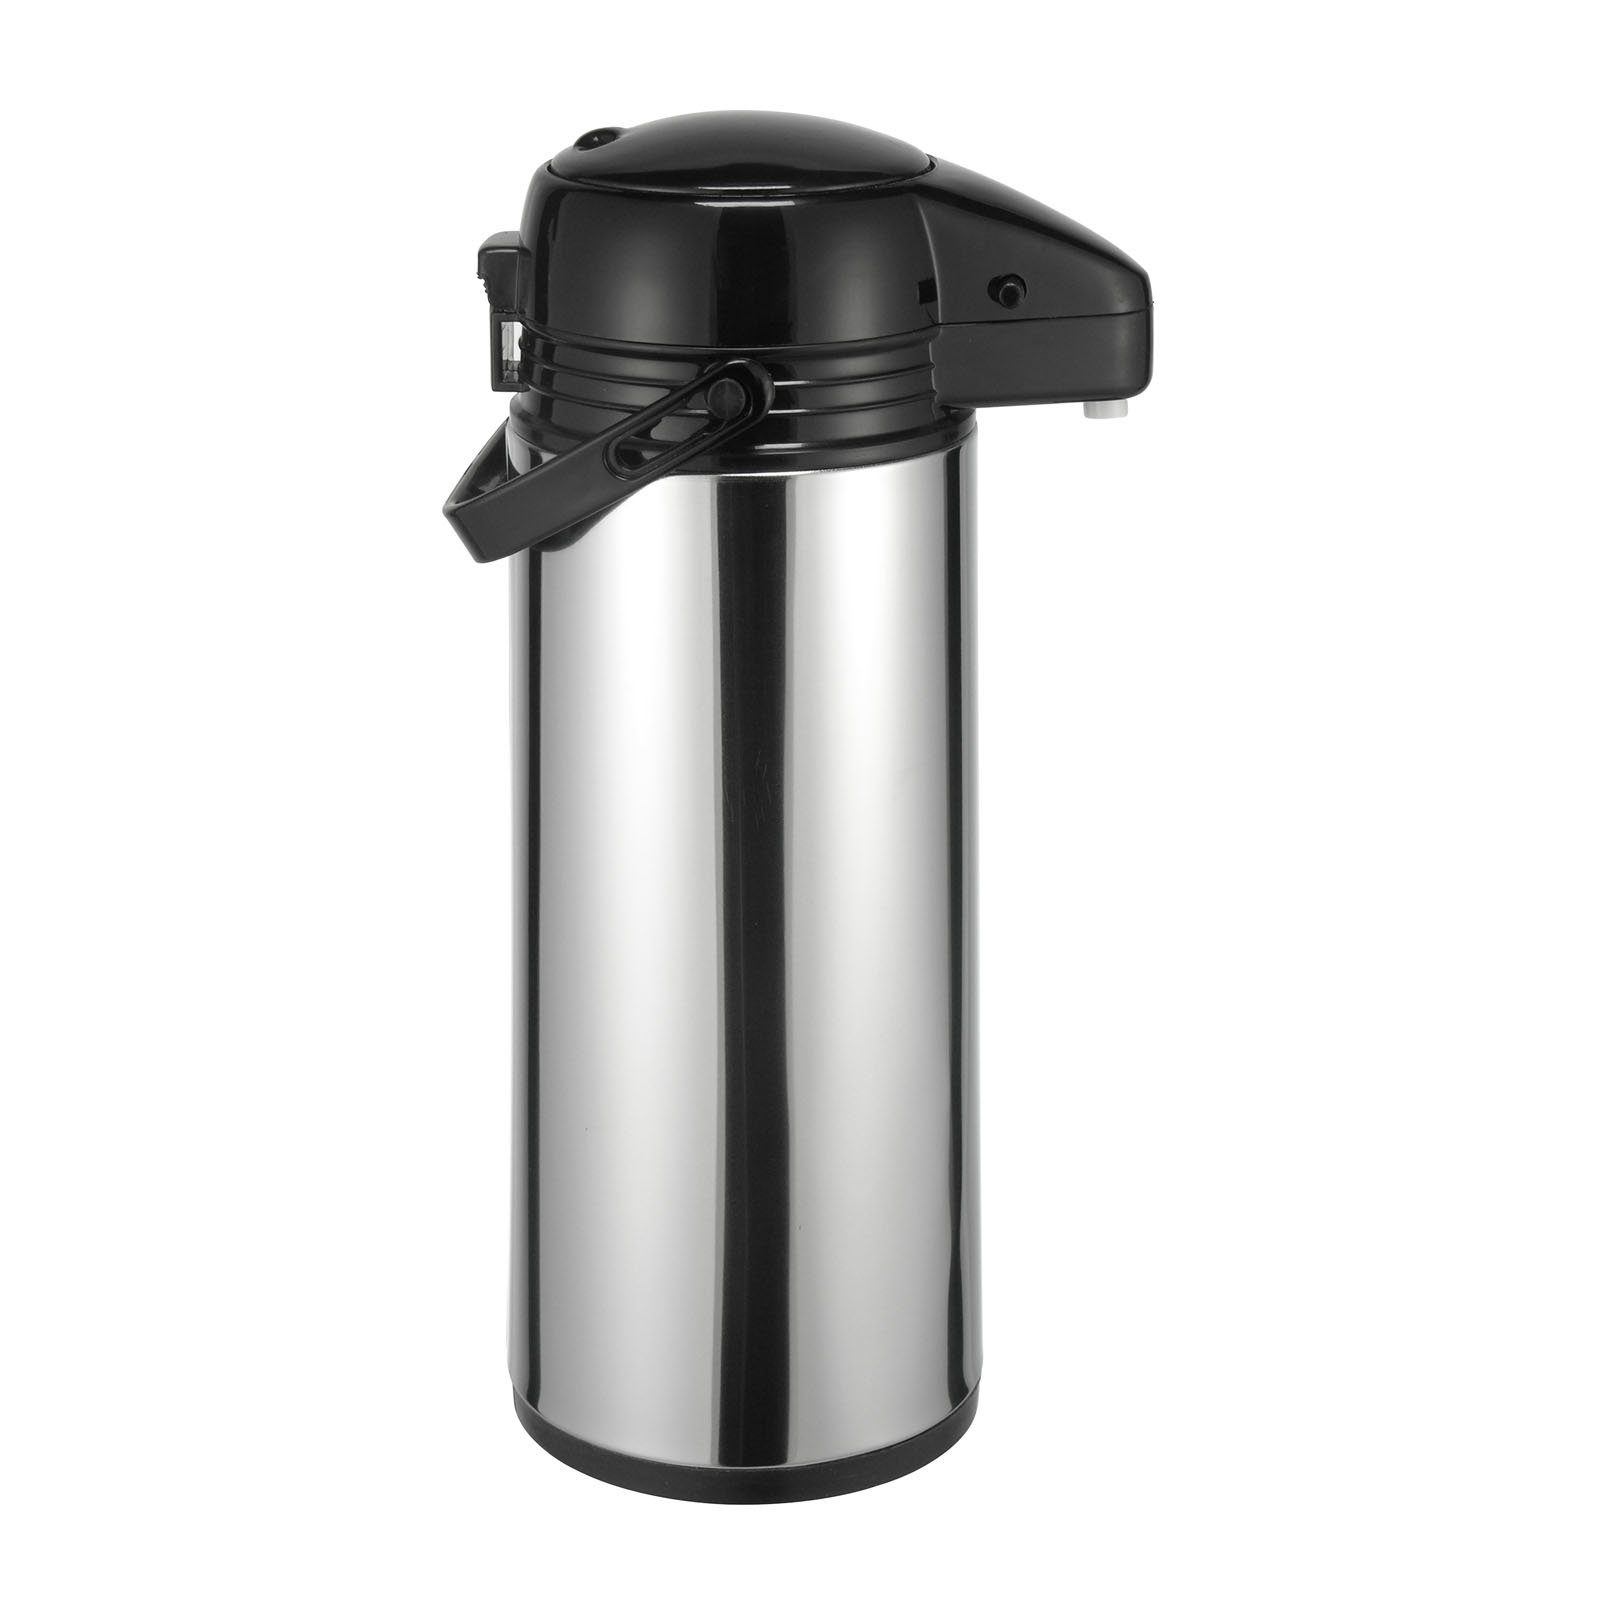 HAC24 Pump-Isolierkanne Thermoskanne Kaffeekanne Isolierkanne 1,9 Kaffee Thermo Pumpmechanismus Tee Kanne Airpot l, Mit Tragegriff & Teekanne Pumpkanne, Edelstahl